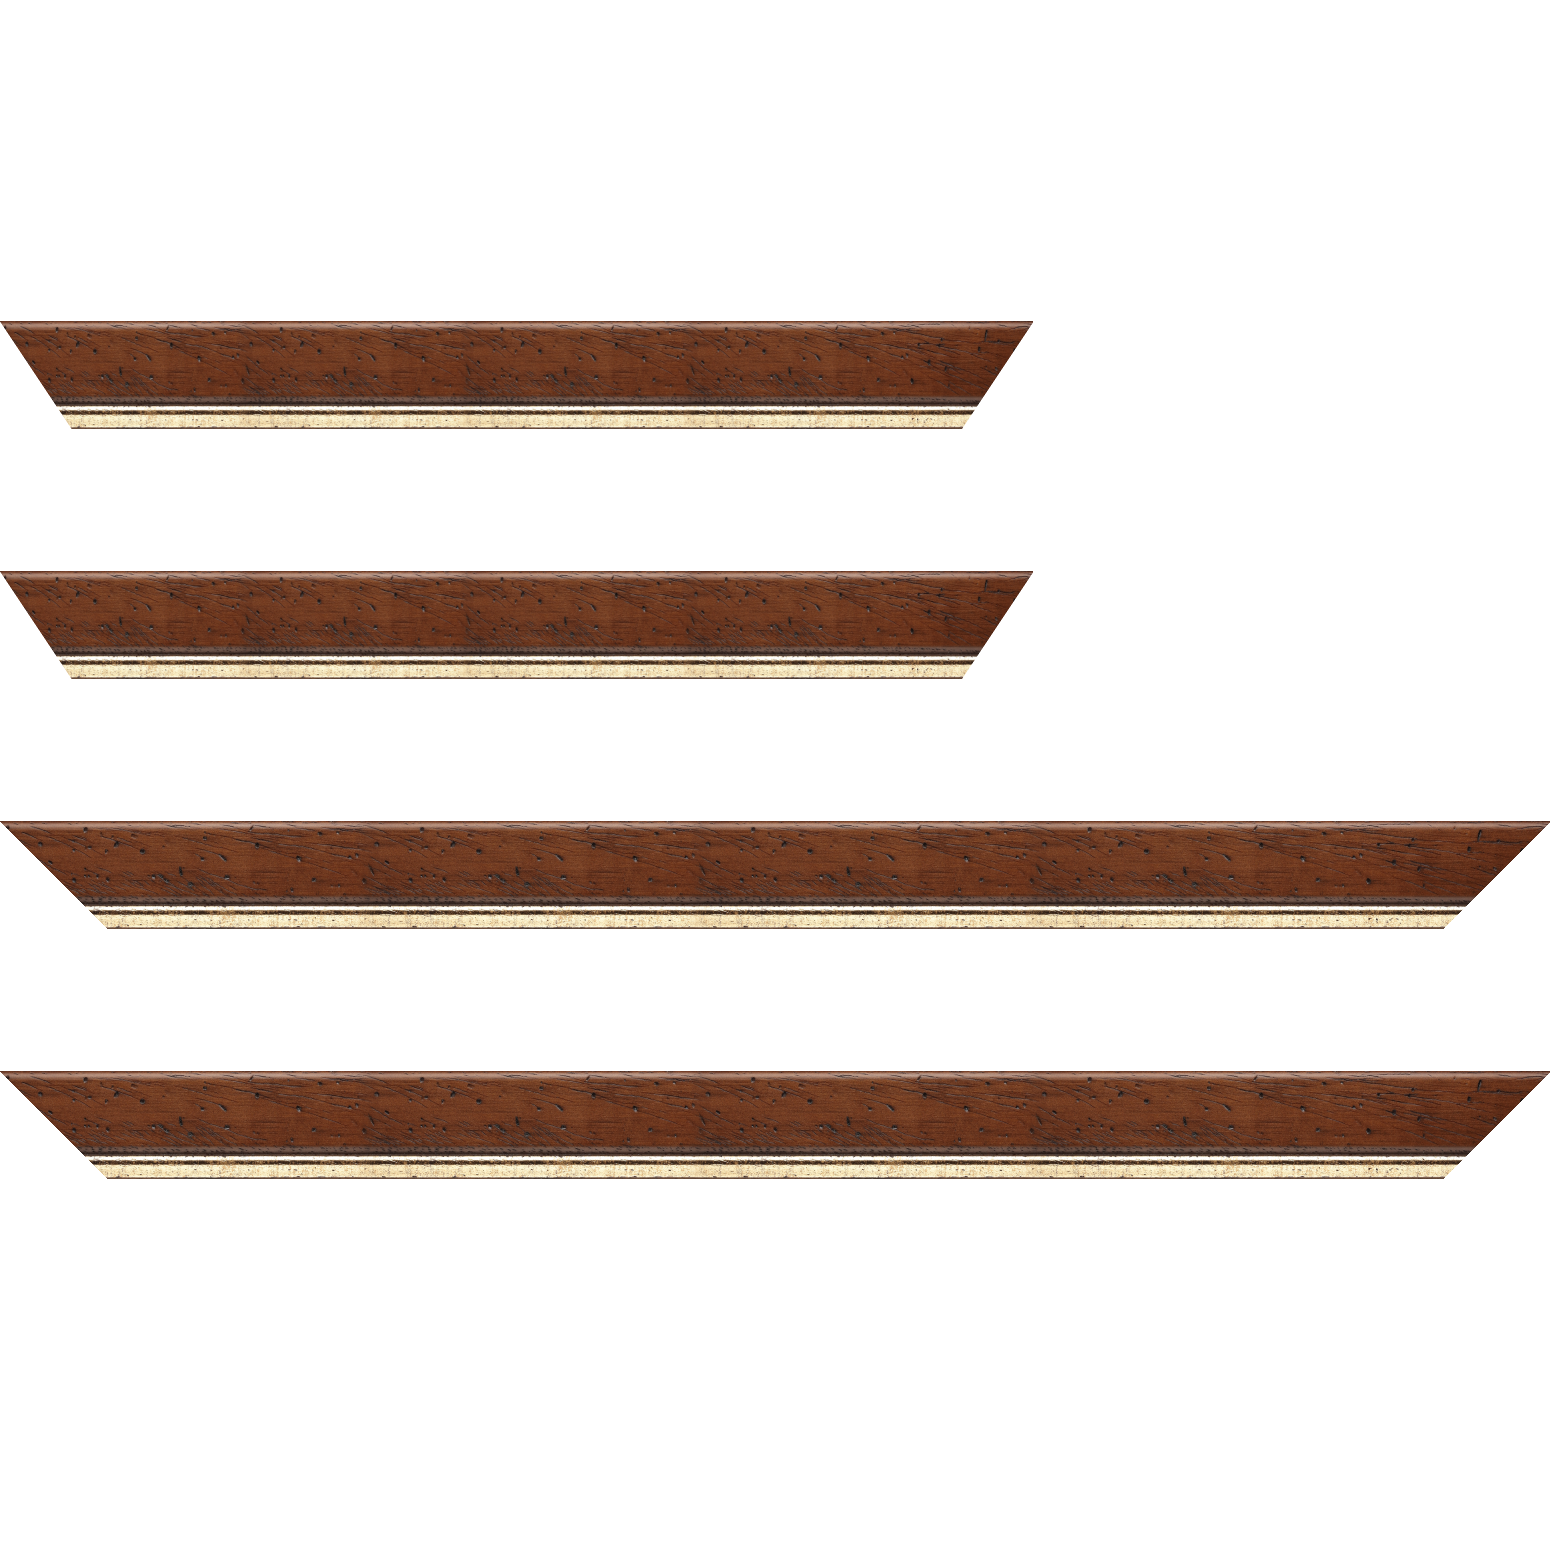 Baguette bois profil arrondi largeur 3.5cm marron satiné classique filet or - 28x34